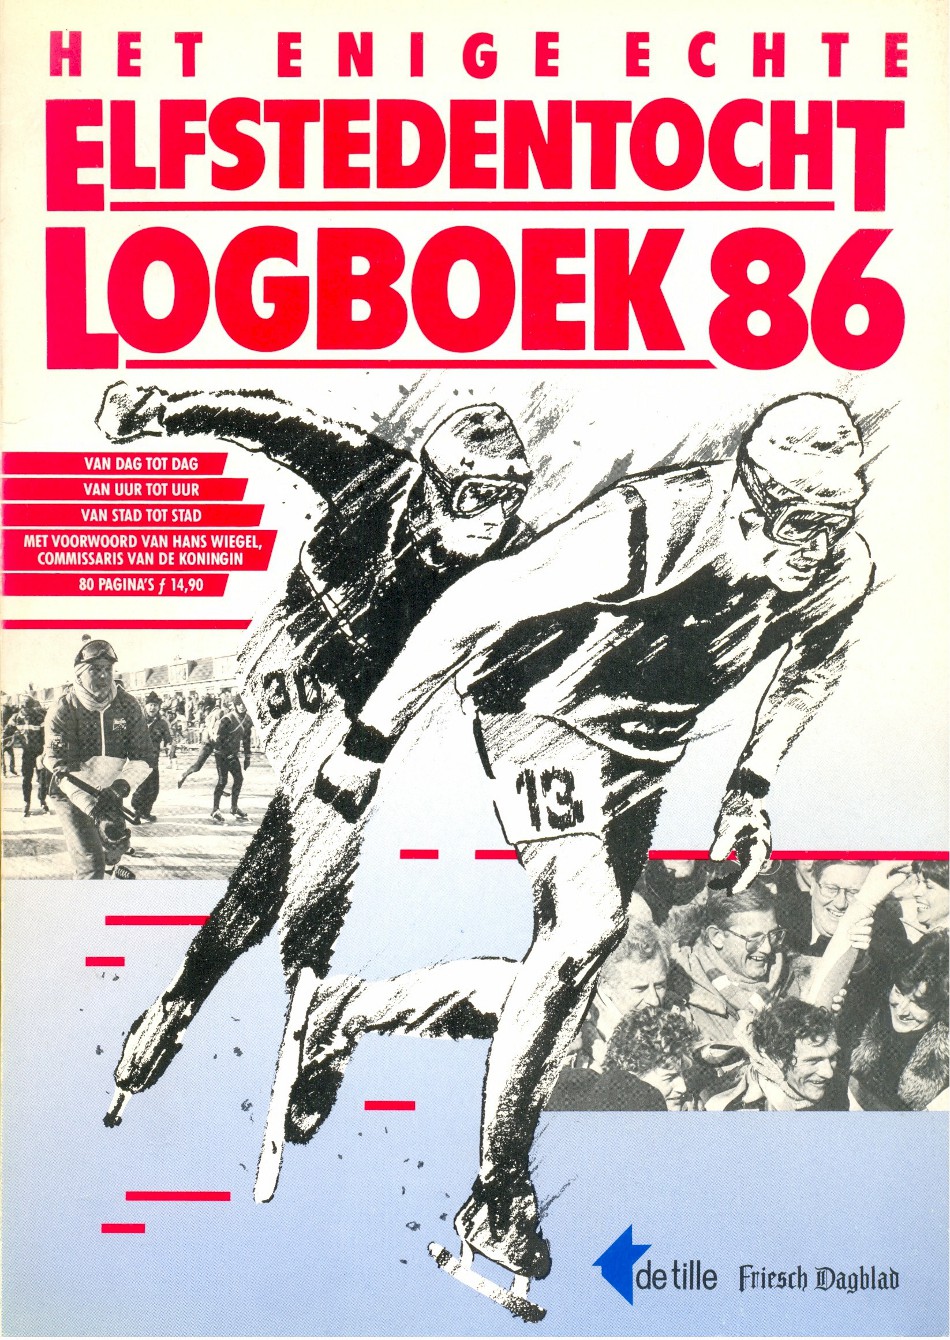 Redaktie Friesch Dagblad - Het enige echte Elstedentocht Logboek'86